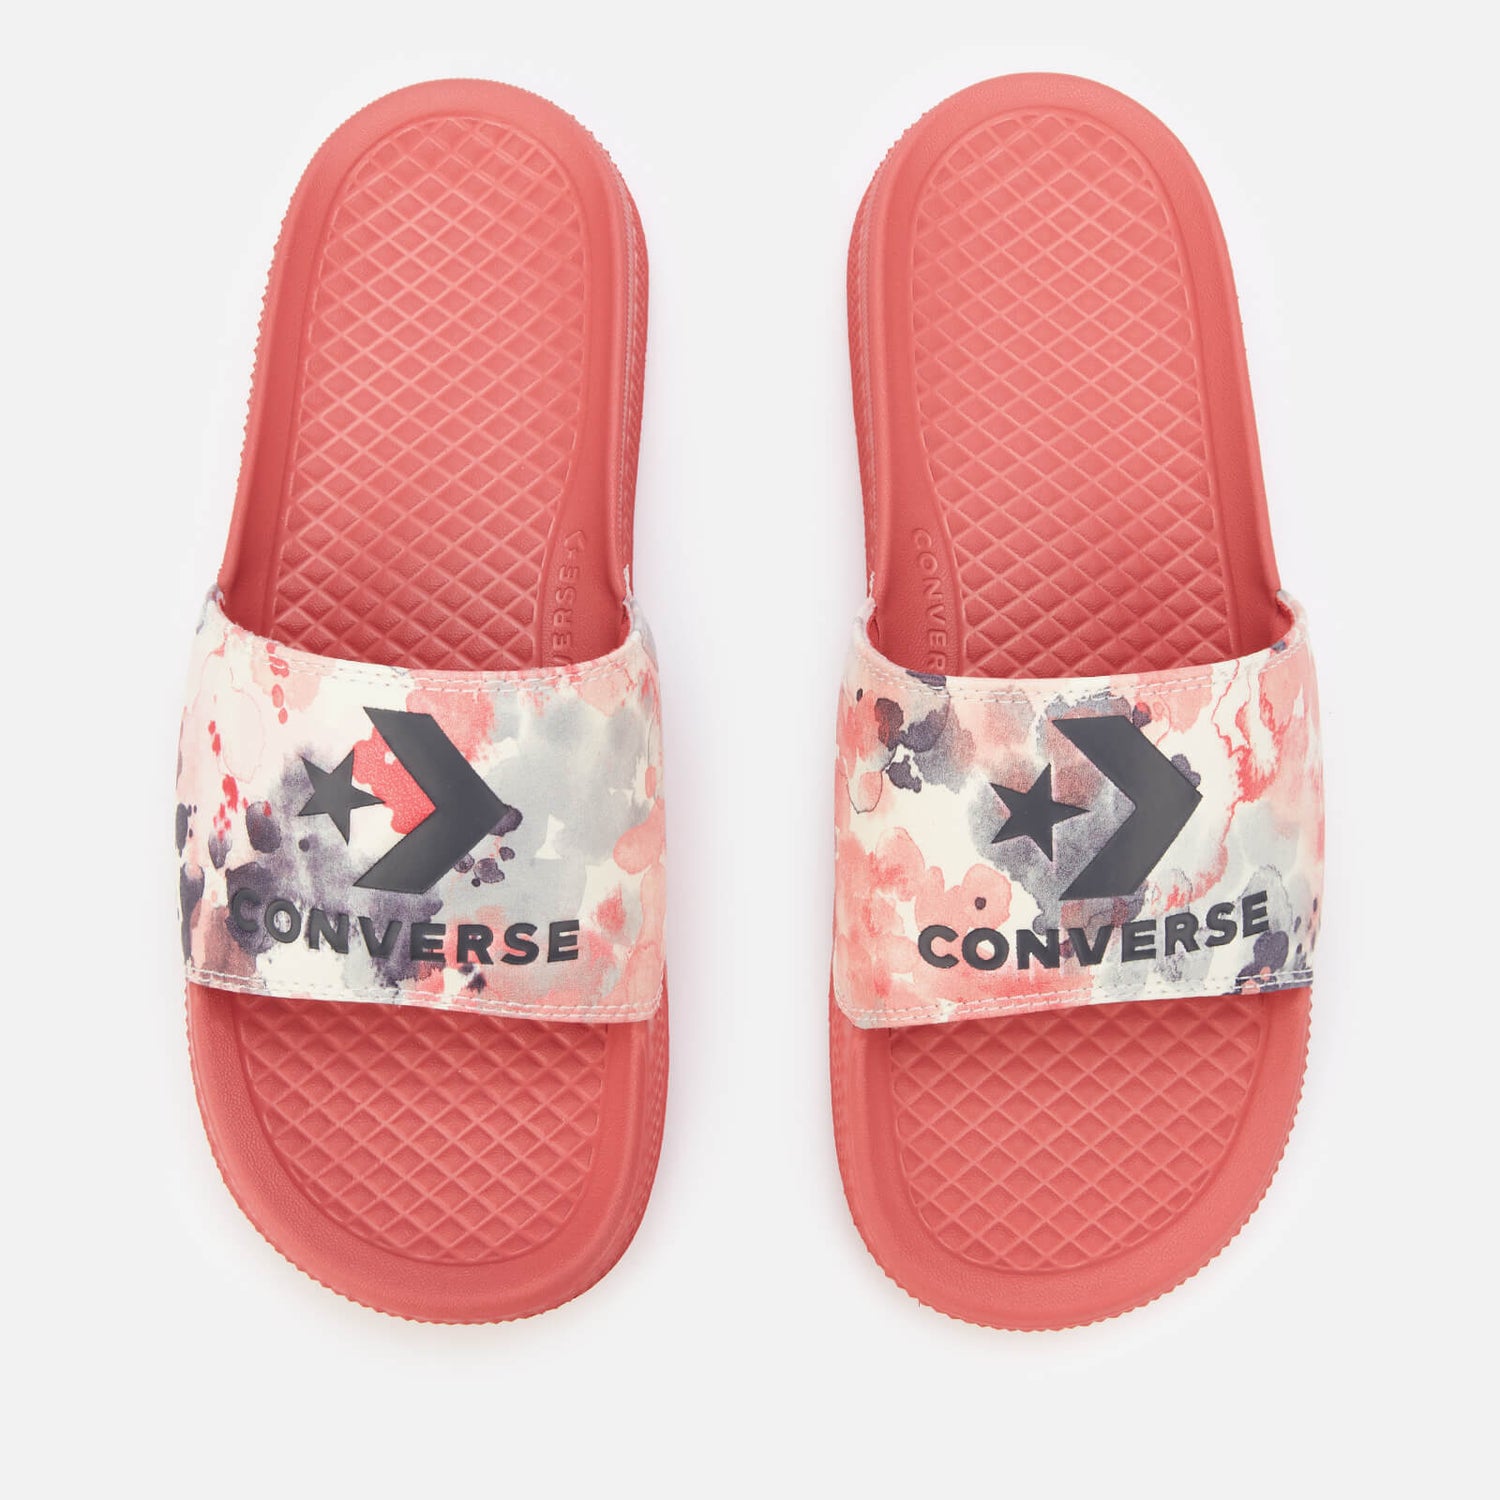 Converse Women's All Star Summer Fest Slide Sandals - Terracotta Pink/Egret/Storm Wind